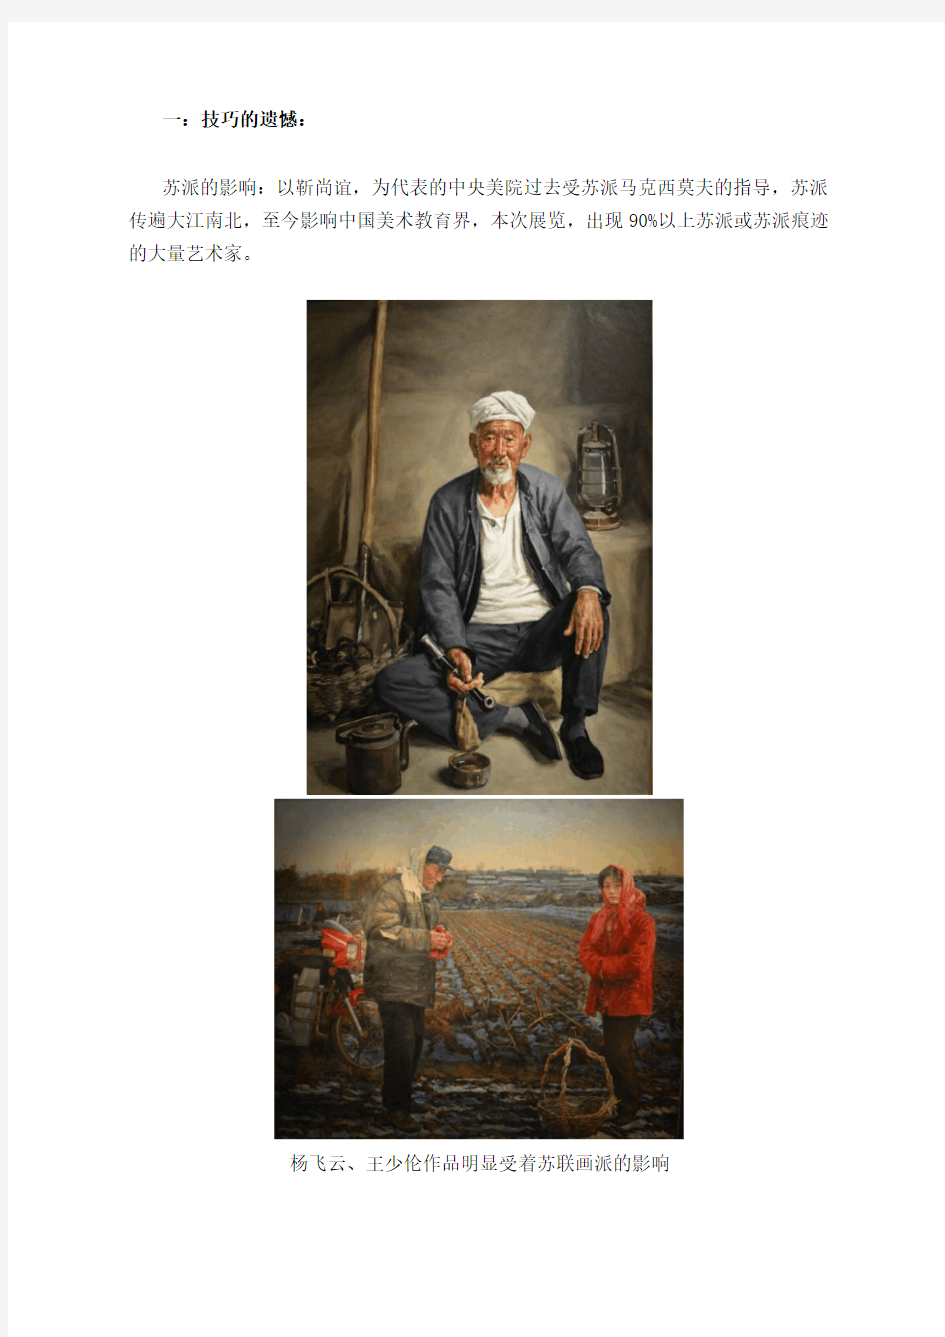 中国写实油画和西方经典写实到底差距有多大